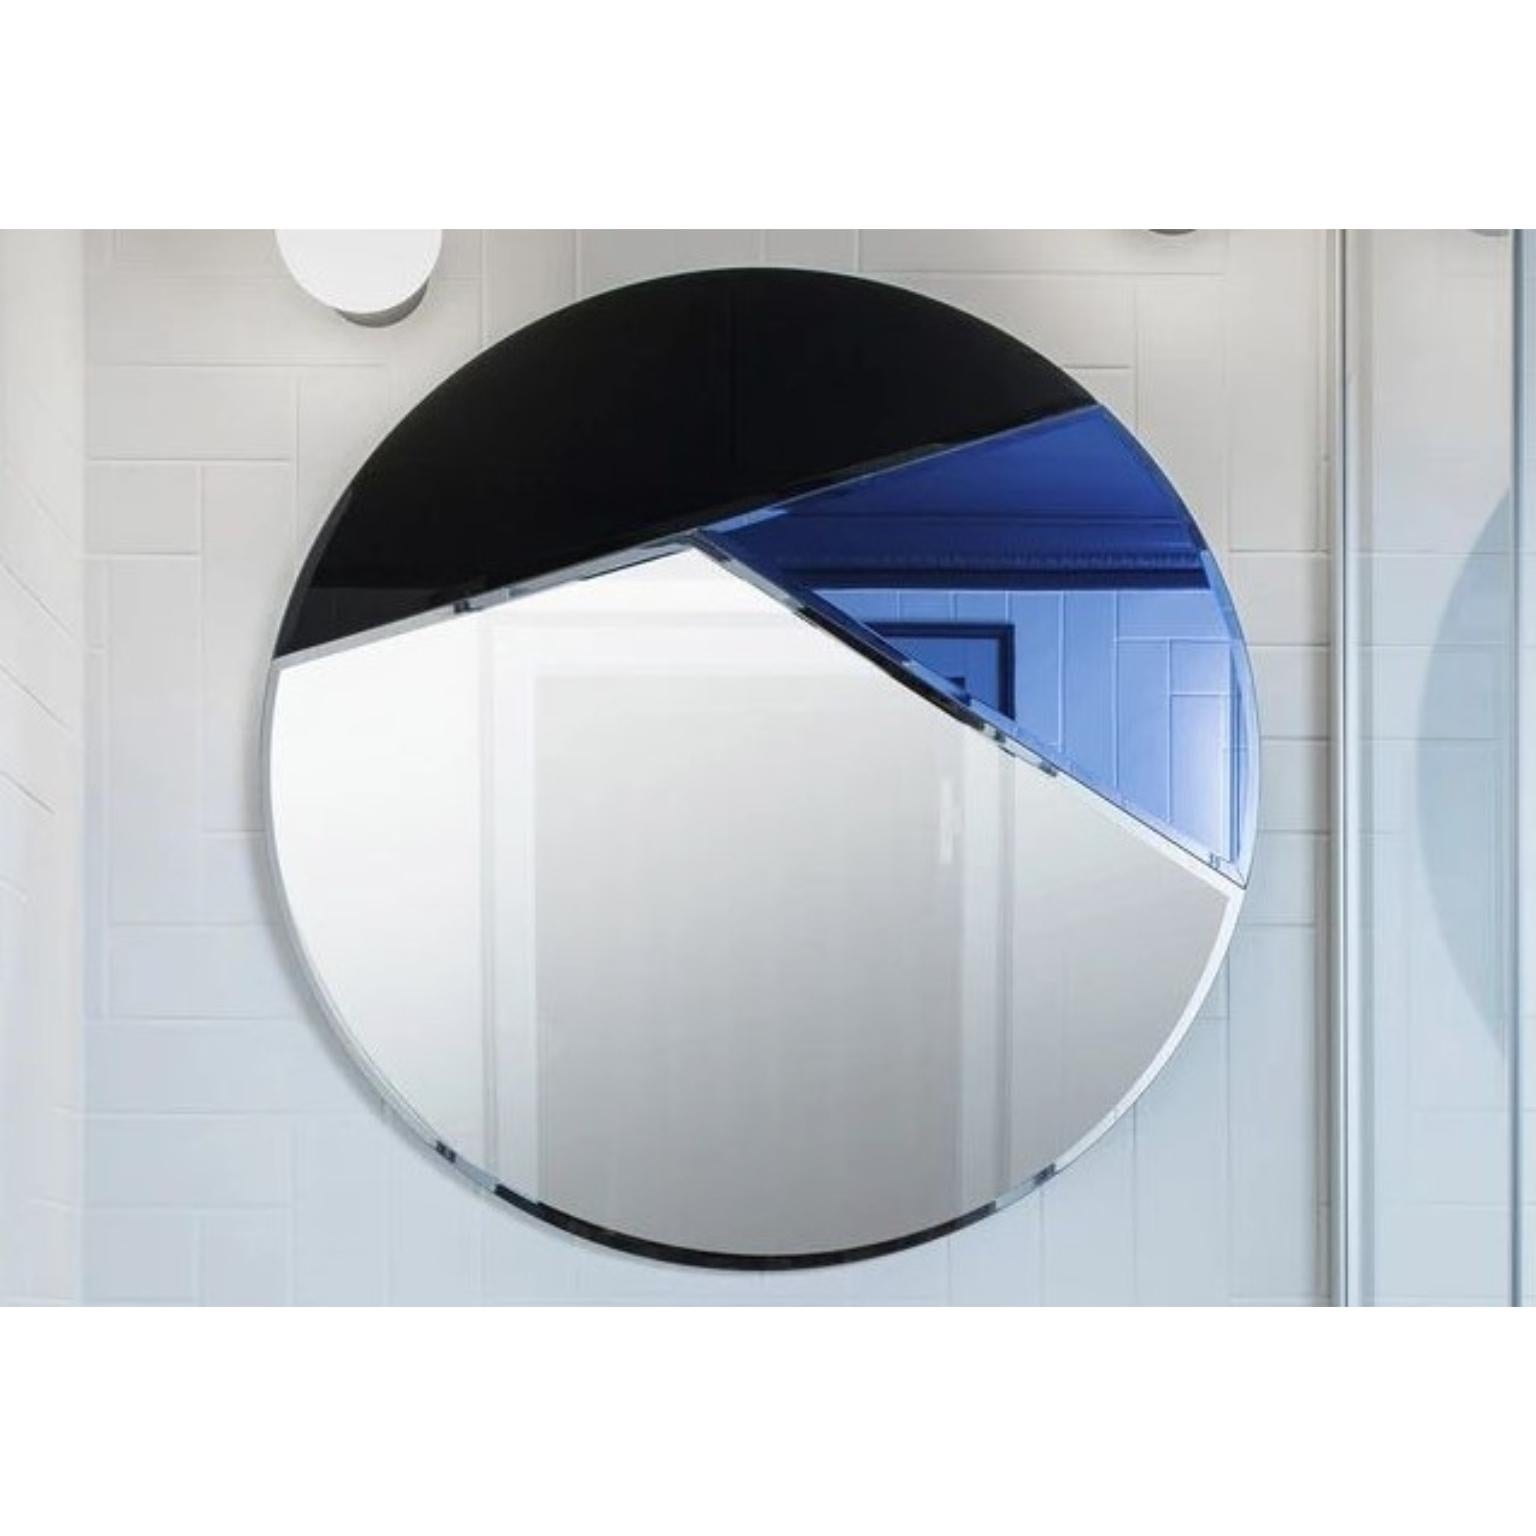 Miroir rond Nouveau 80 
Dimensions : Ø 80 x 1,2 cm
MATERIAL : Miroir à facettes de 4 mm sur MDF peint en noir
Poids : 9 kg


La série de miroirs ronds Nouveau allie l'élégance à la simplicité et se caractérise par ses détails géométriques en